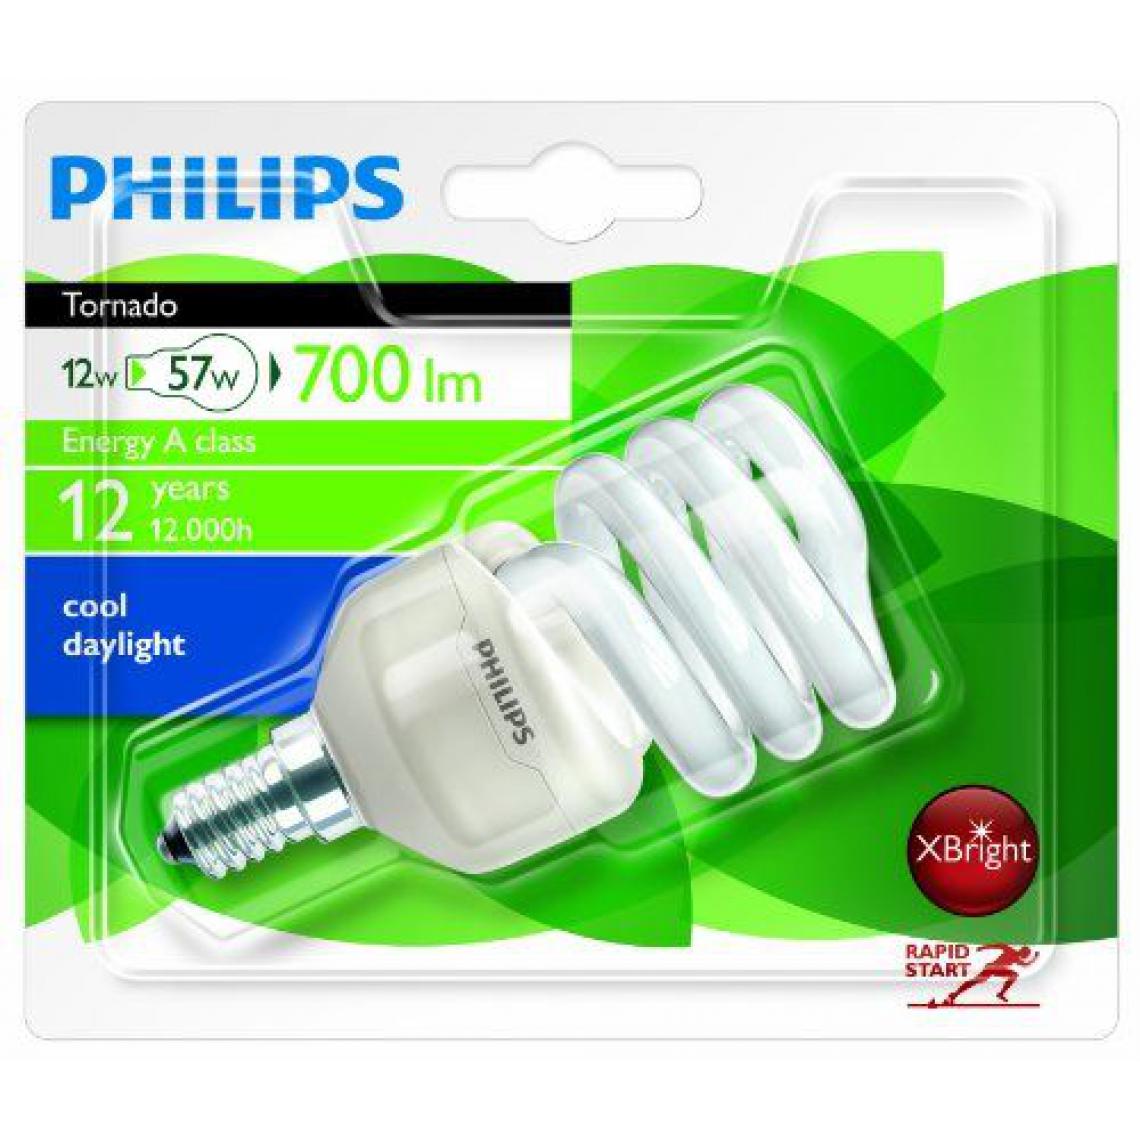 Philips - Philips 929689351602 Tornado T2 12 W E14 CDL 1BL/6 Ampoules à Economie d'énergie 230V - Ampoules LED